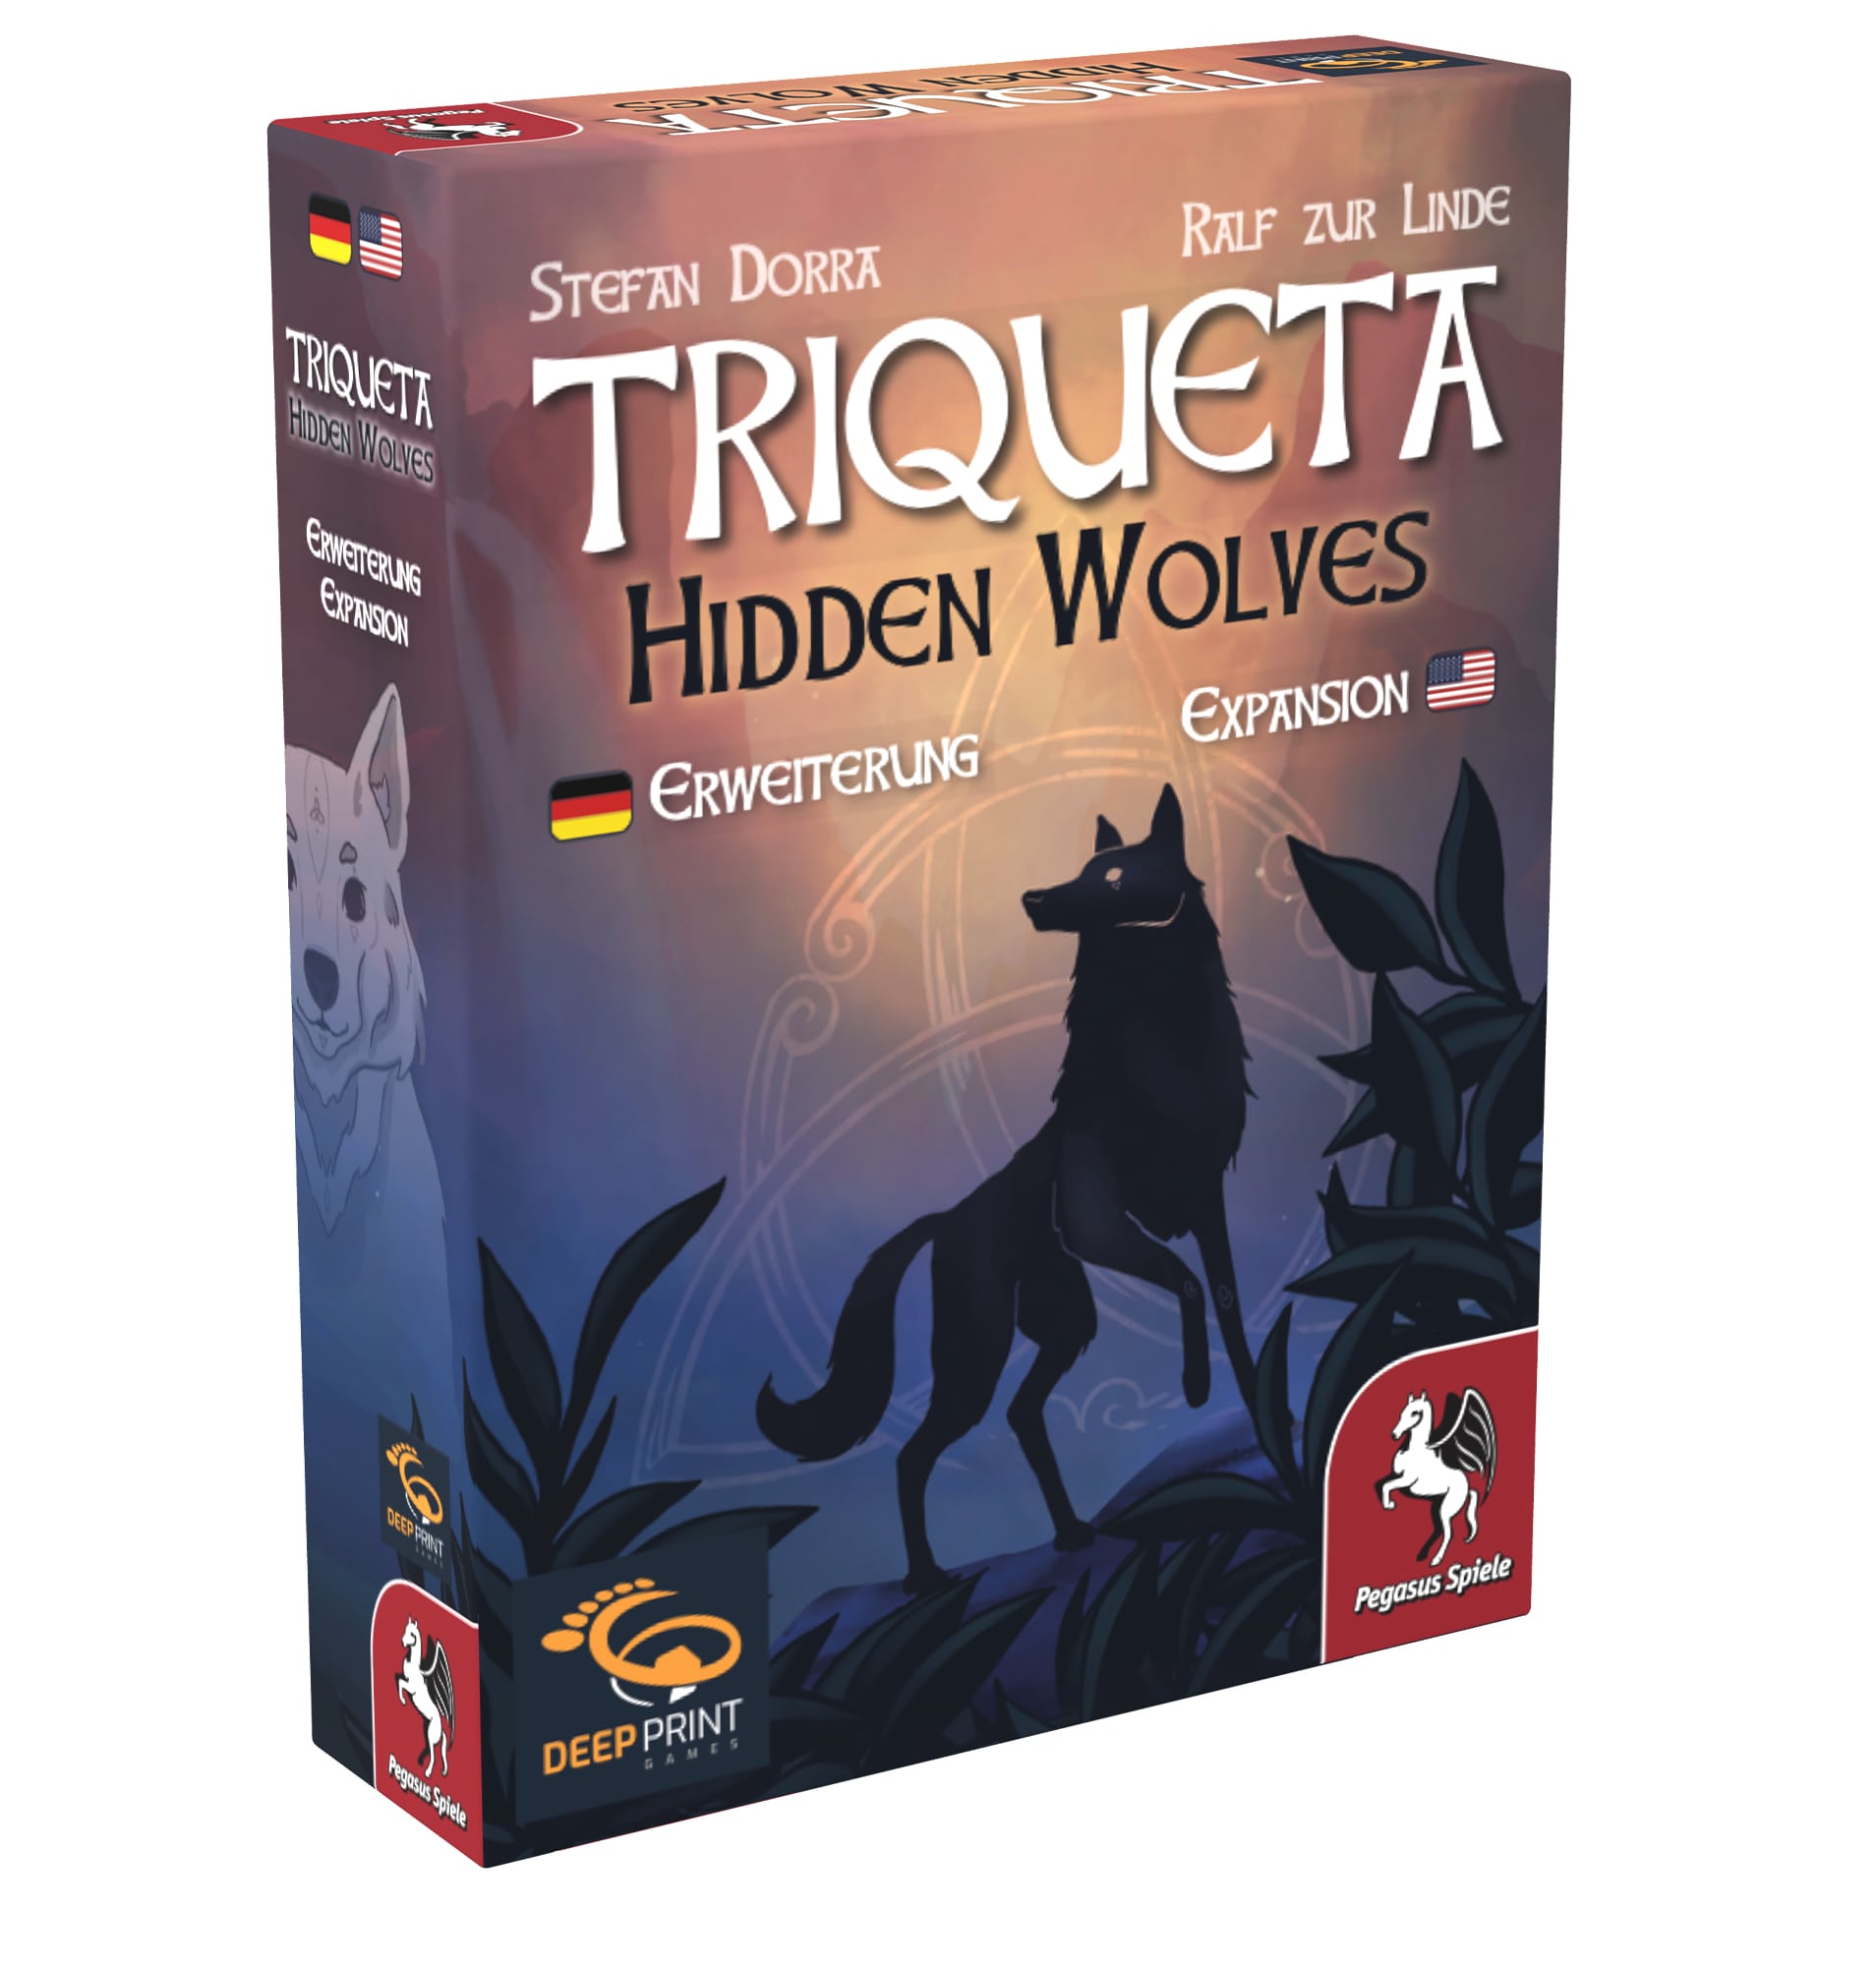 Triqueta - Hidden Wolves Erweiterung